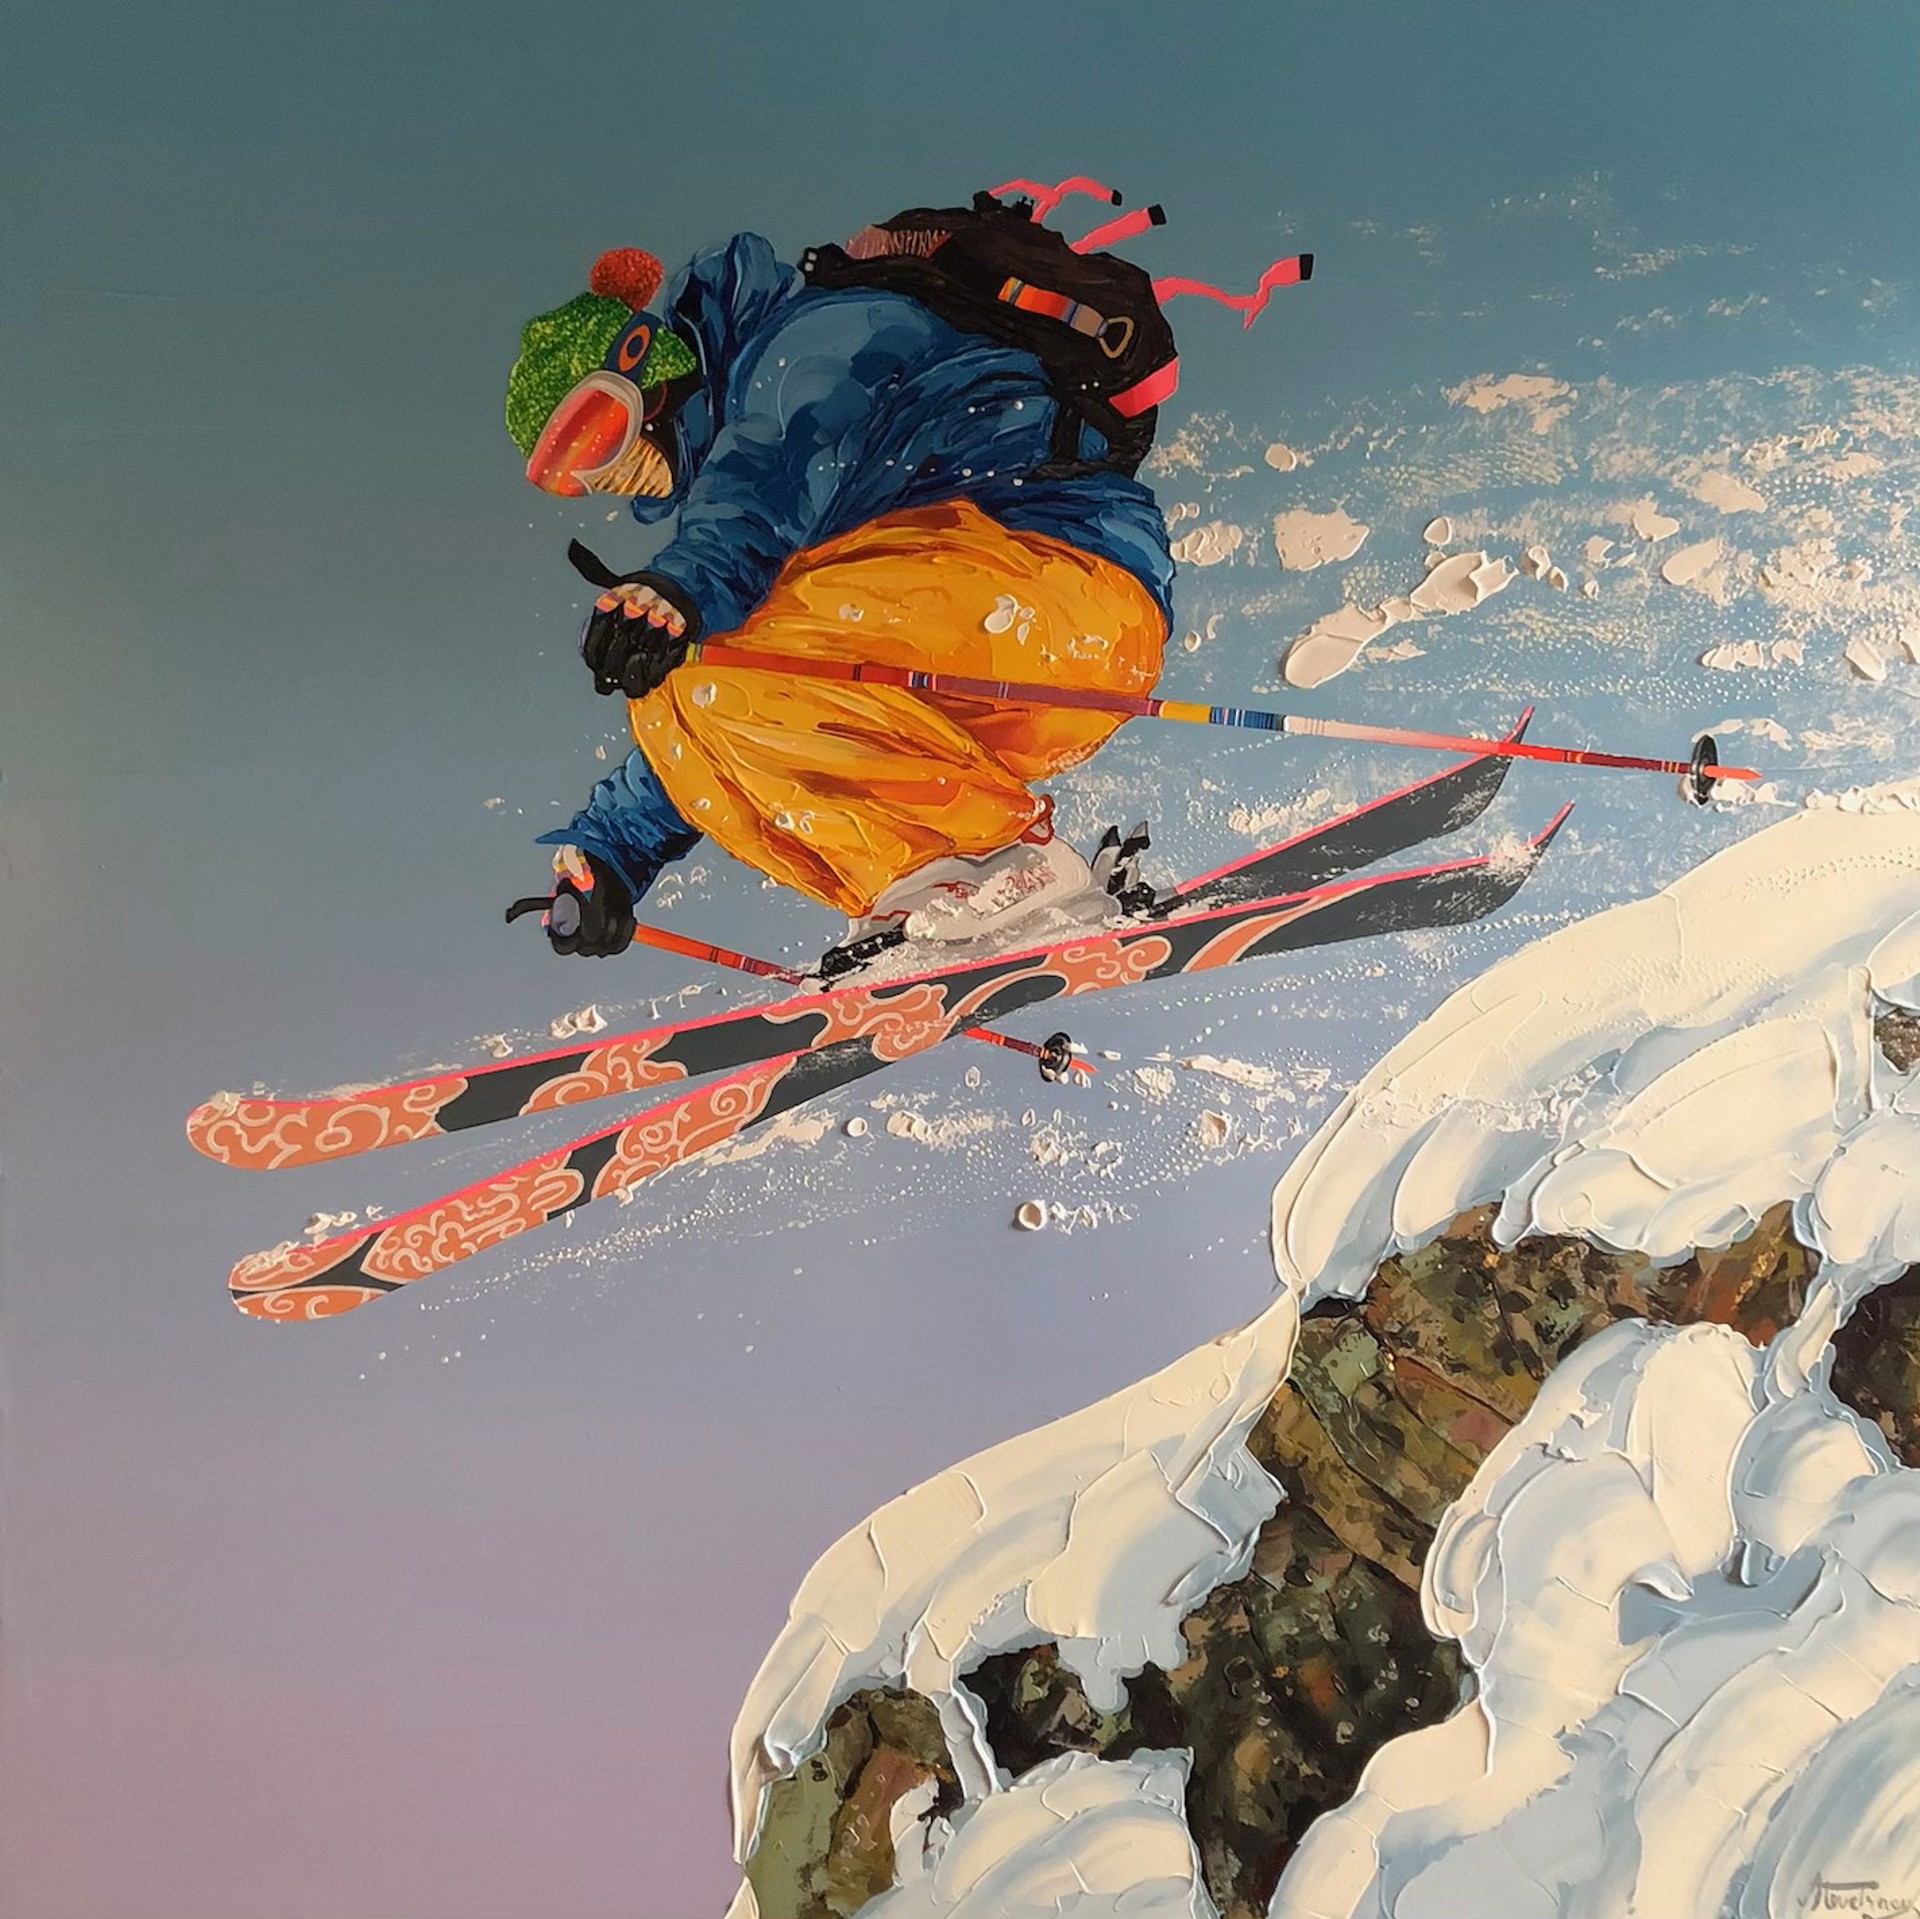 Ange de ski by Steve Tracy